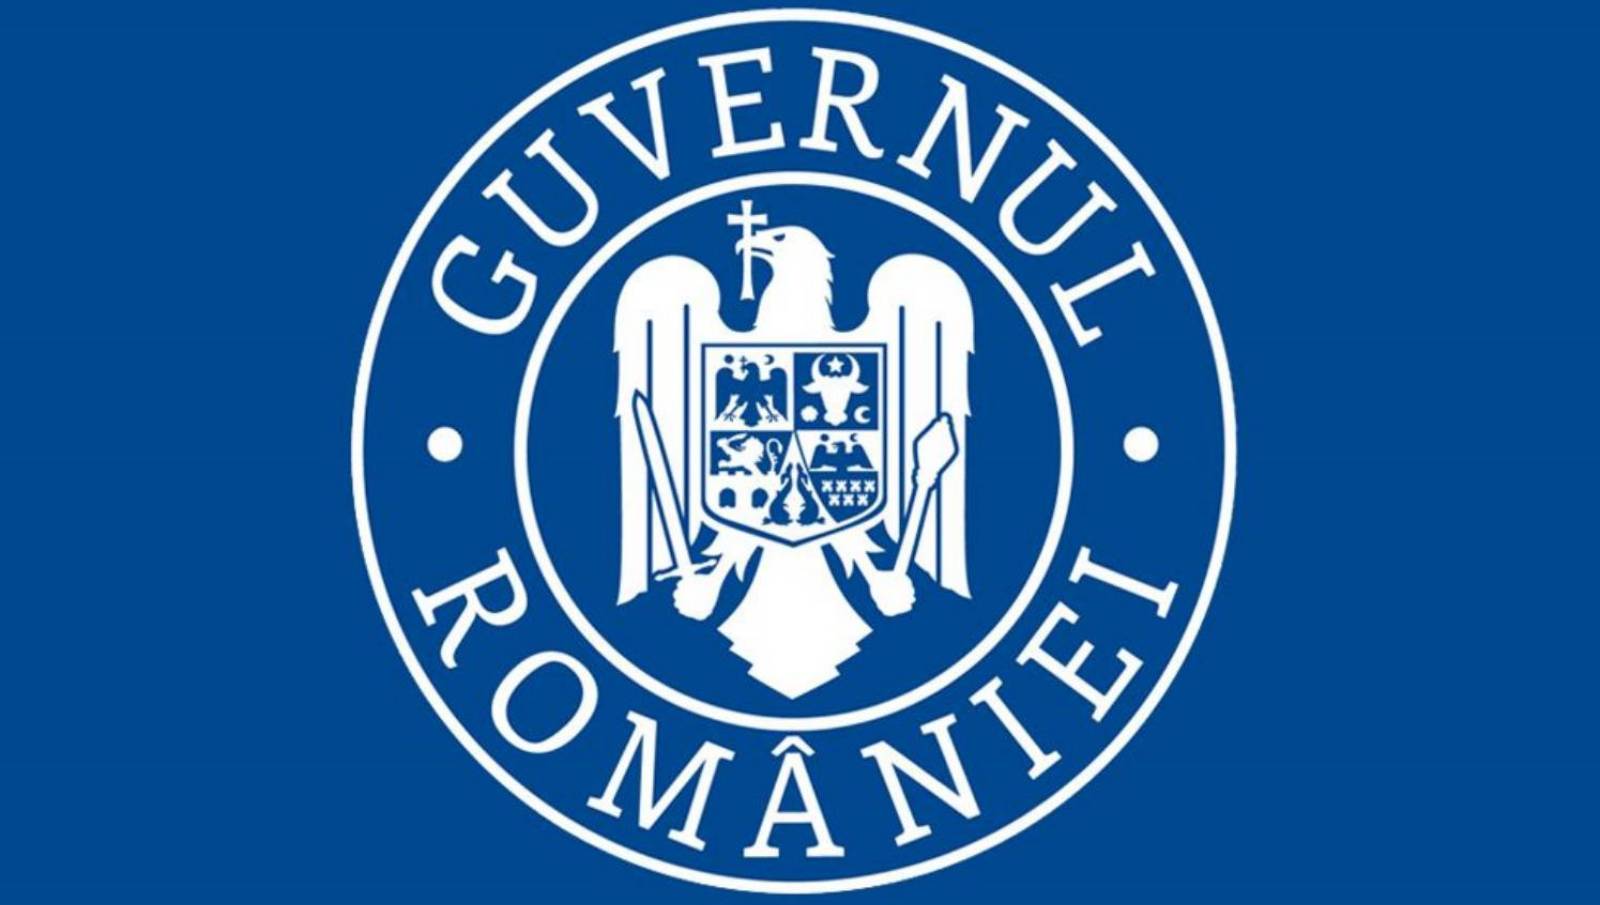 Wirus rumuńskiego banku rządowego